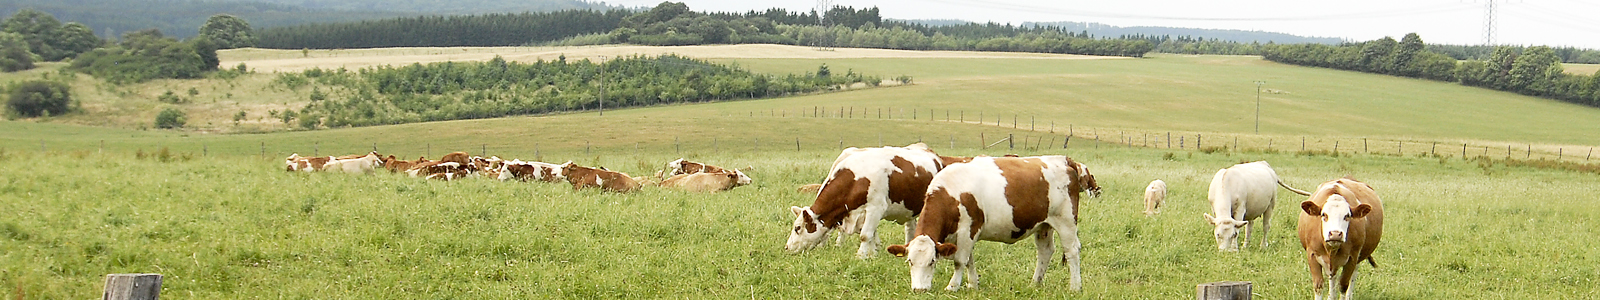 Kühe auf der Weide ©Feuerbach